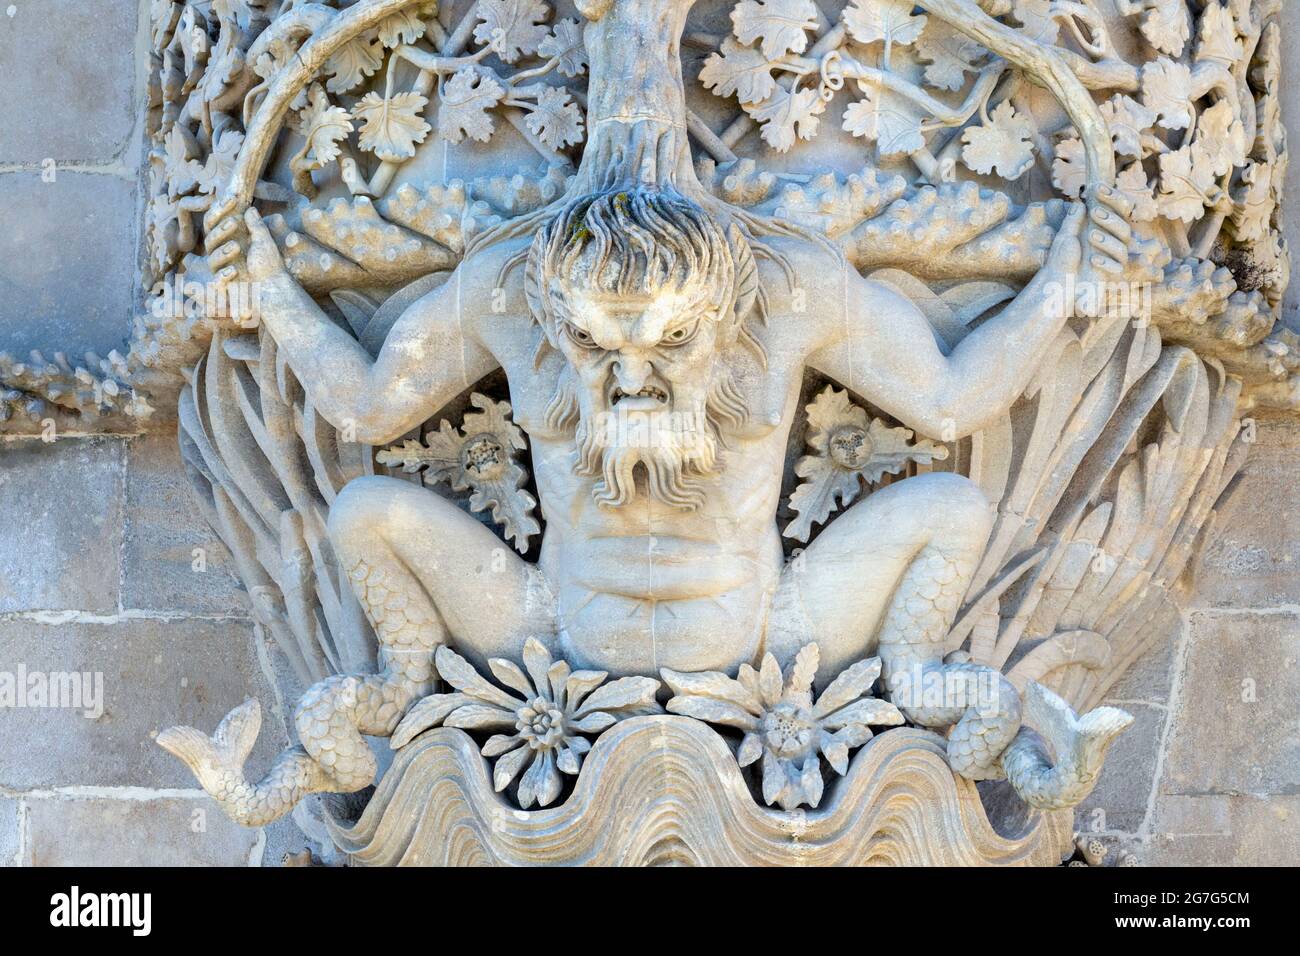 Il Palazzo Nazionale pena, Sintra, quartiere di Lisbona, Portogallo. La figura del dio greco del mare Triton sopra la porta Triton. Lo stile romantico Foto Stock